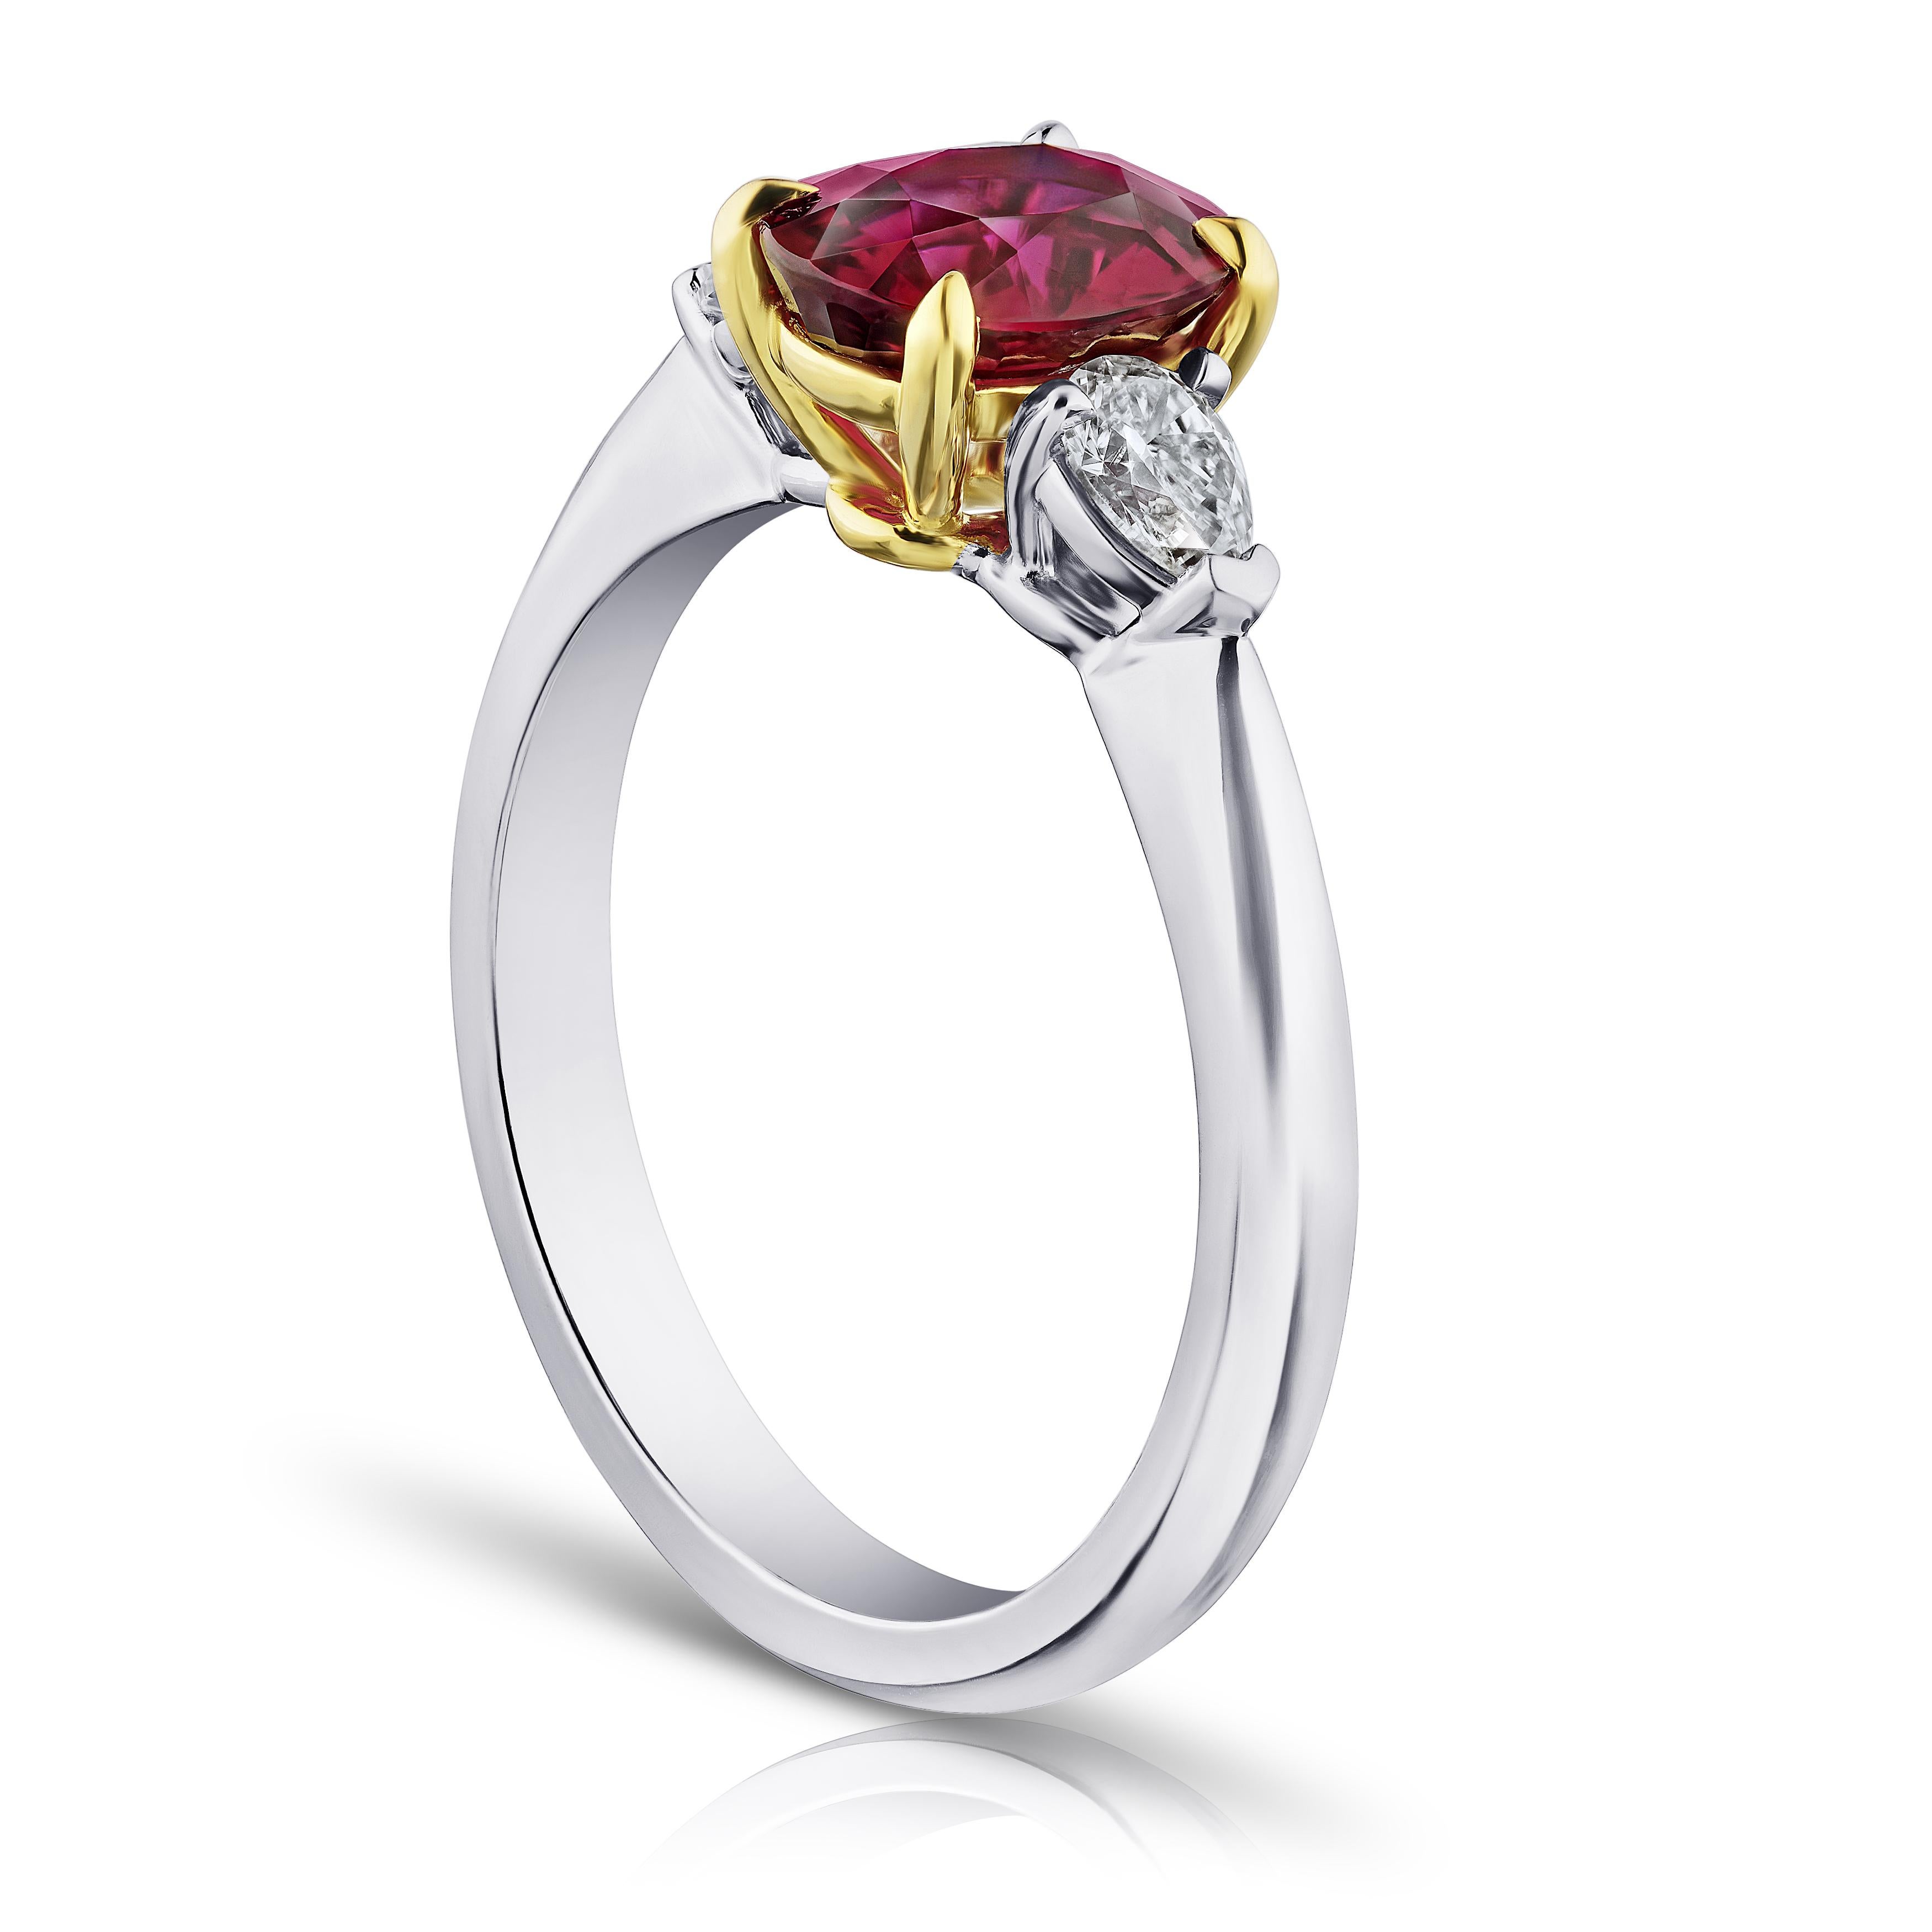 1.72 Karat ovaler roter Rubin mit birnenförmigen Diamanten von 0,33 Karat, gefasst in einem Ring aus Platin und 18 Karat Gelbgold. Der Ring hat derzeit die Größe 7. Resizing auf Ihre Fingergröße ist im Preis inbegriffen.
